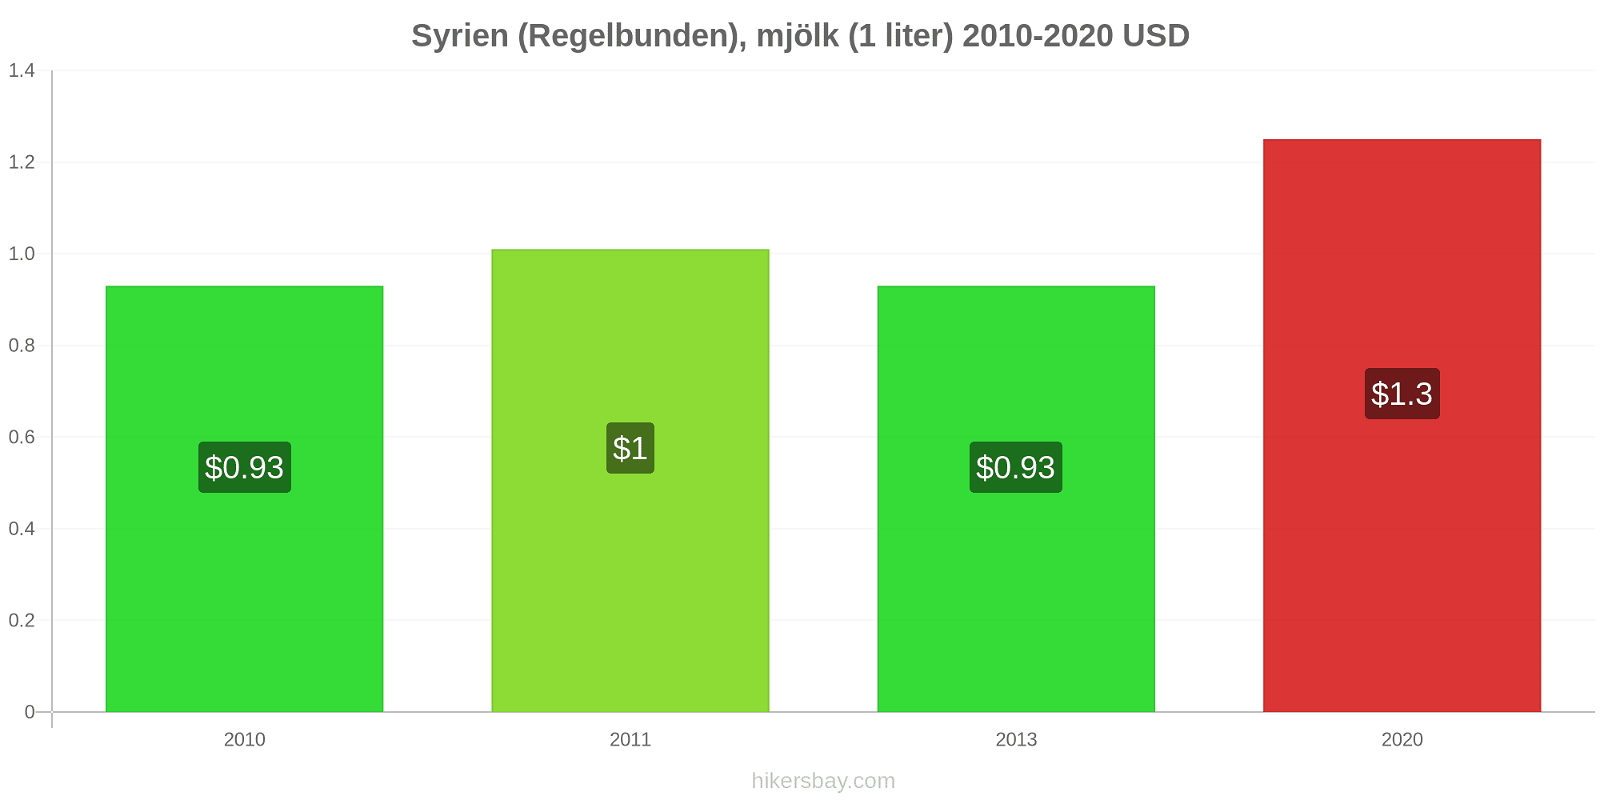 Syrien prisförändringar (Regelbunden), mjölk (1 liter) hikersbay.com